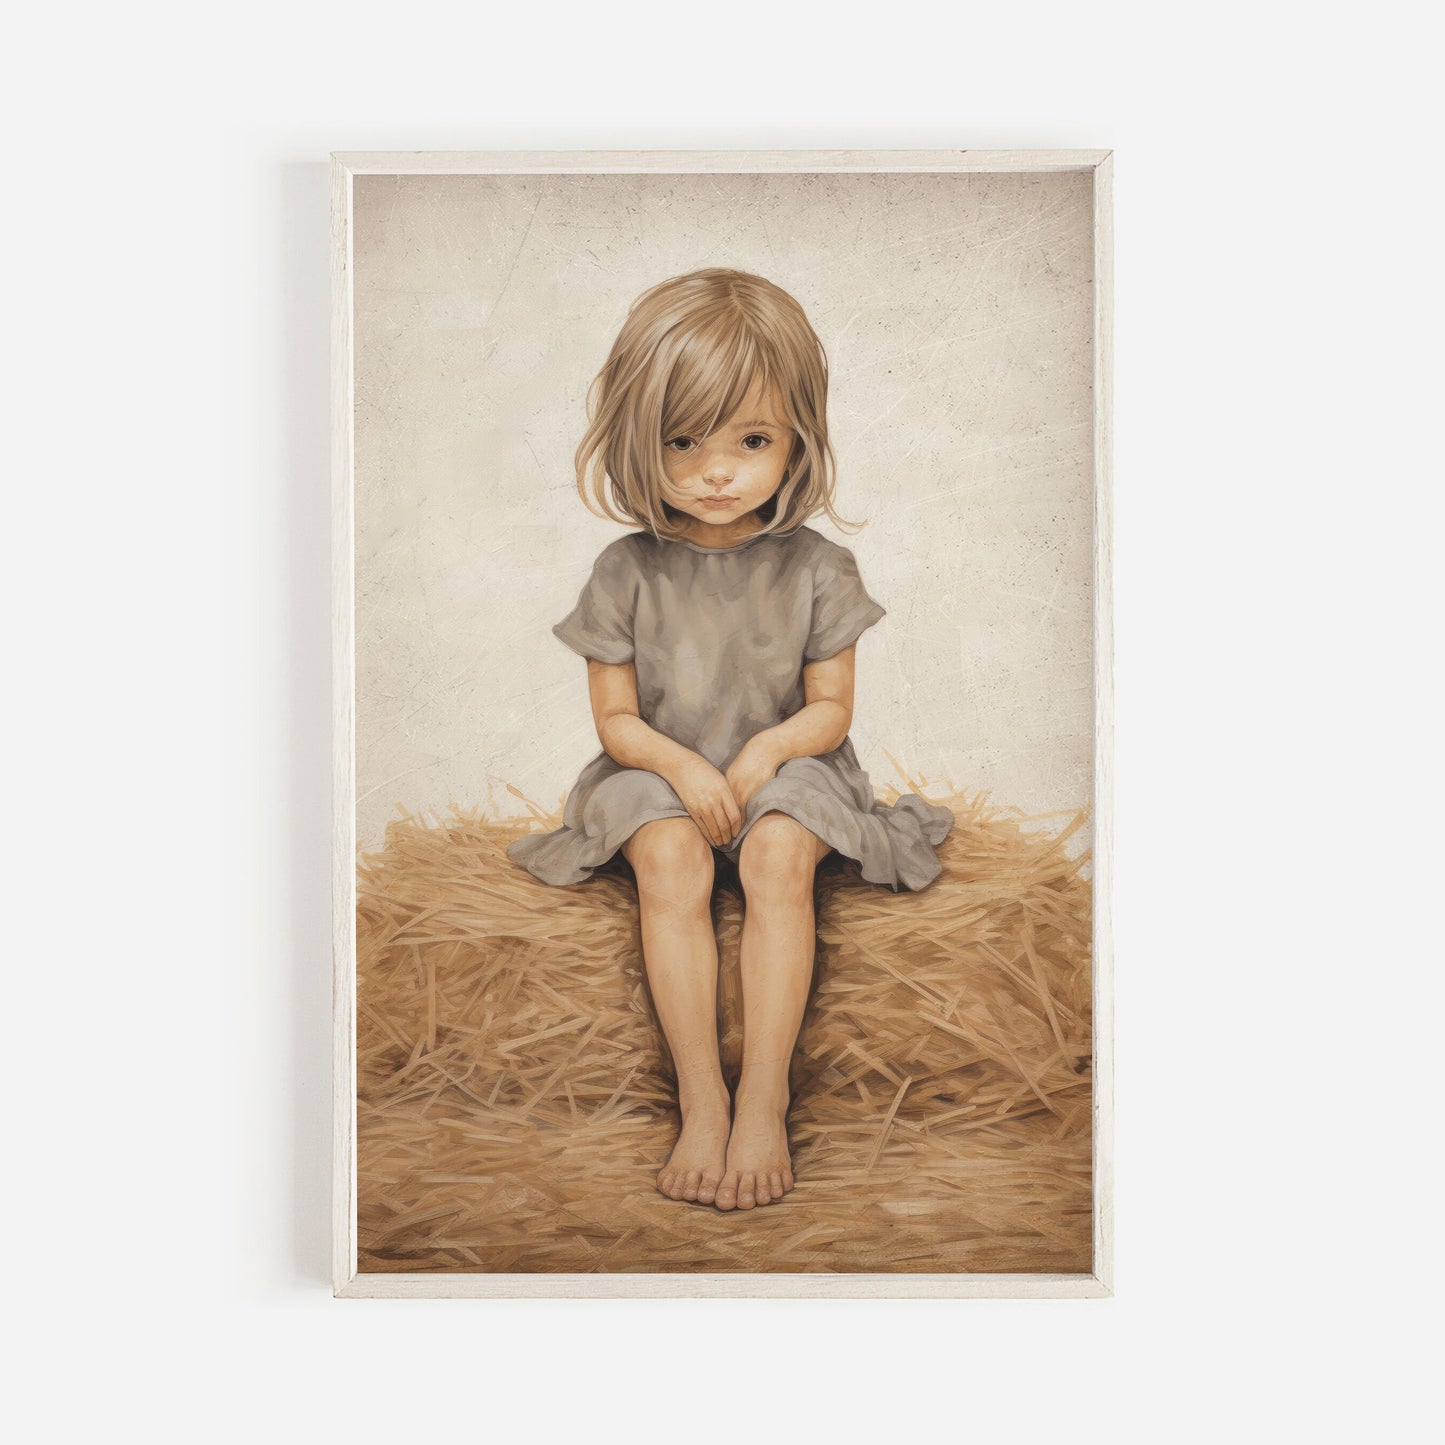 Little Girl on a Hay Bale Painting, Farmhouse Nursery Decor, Cute Girls Room Decor, Vintage Countryside Wall Art, Printable Girl Wall ARt